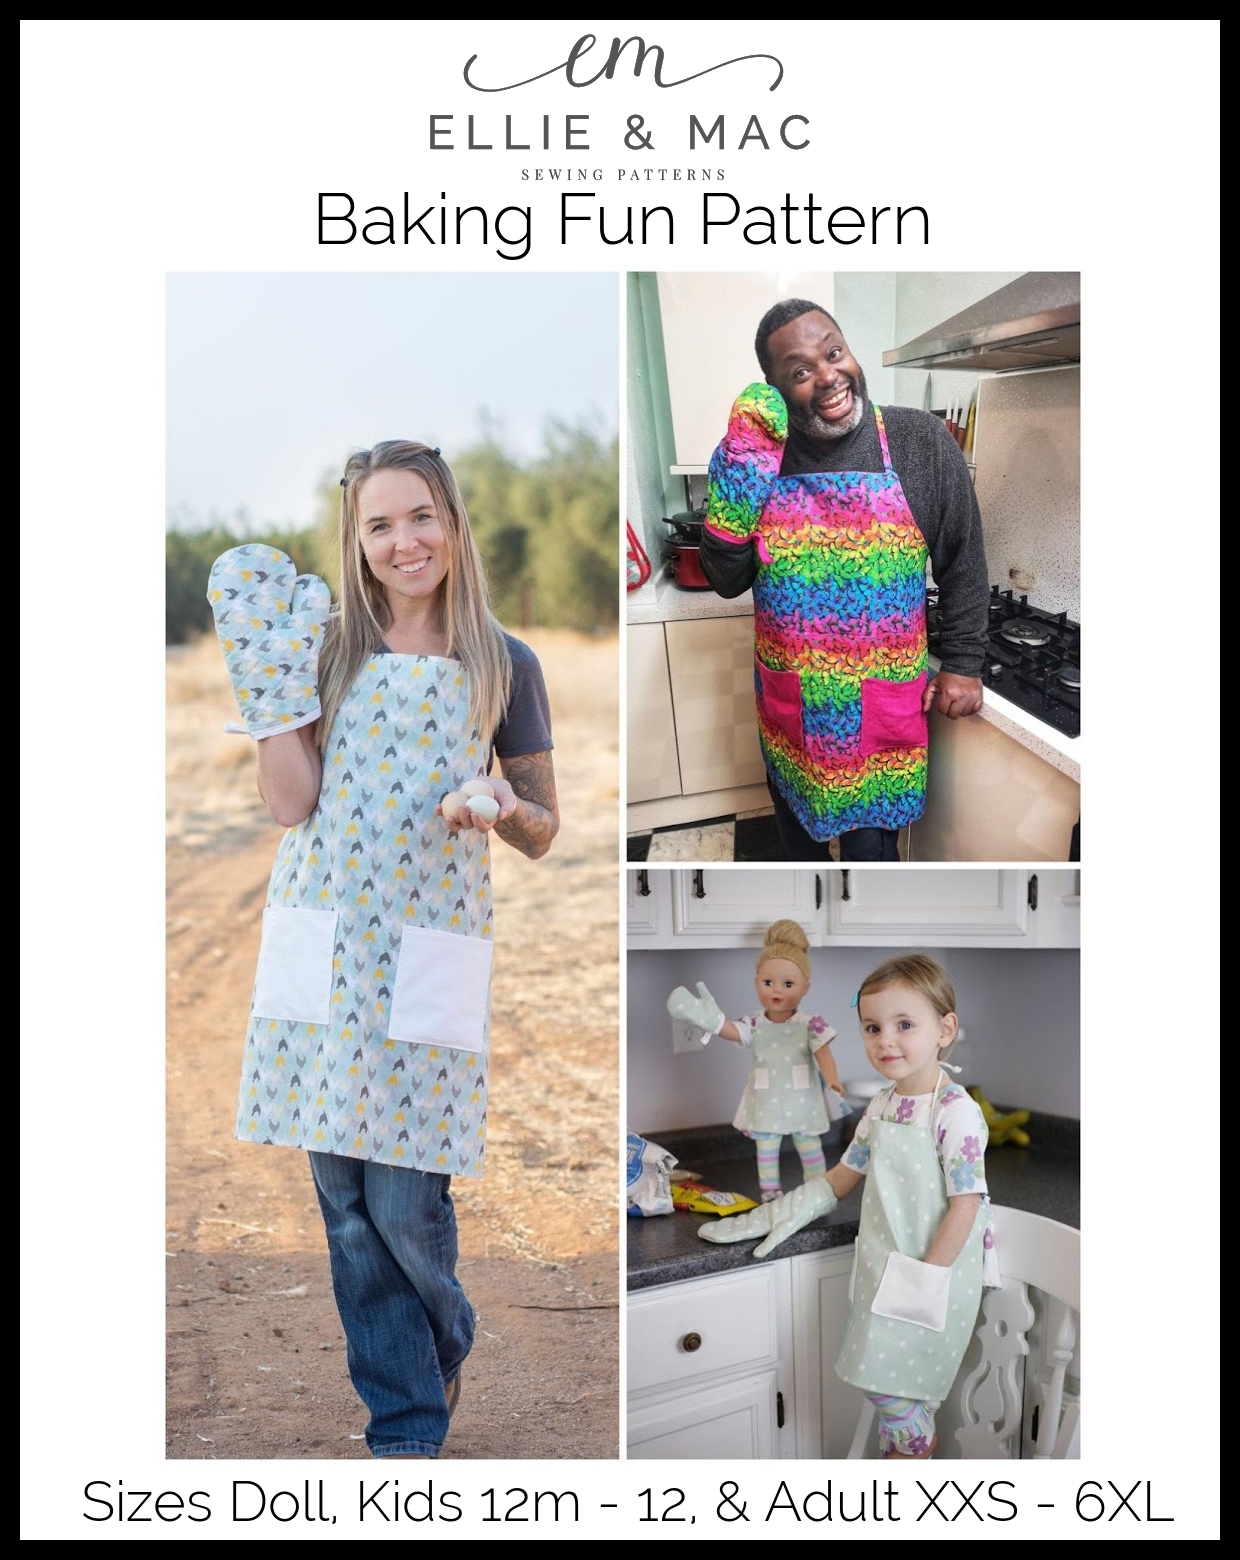 11 Pcs Kitchen Gift Cooking Mitt Set Girls Toddler Apron Set